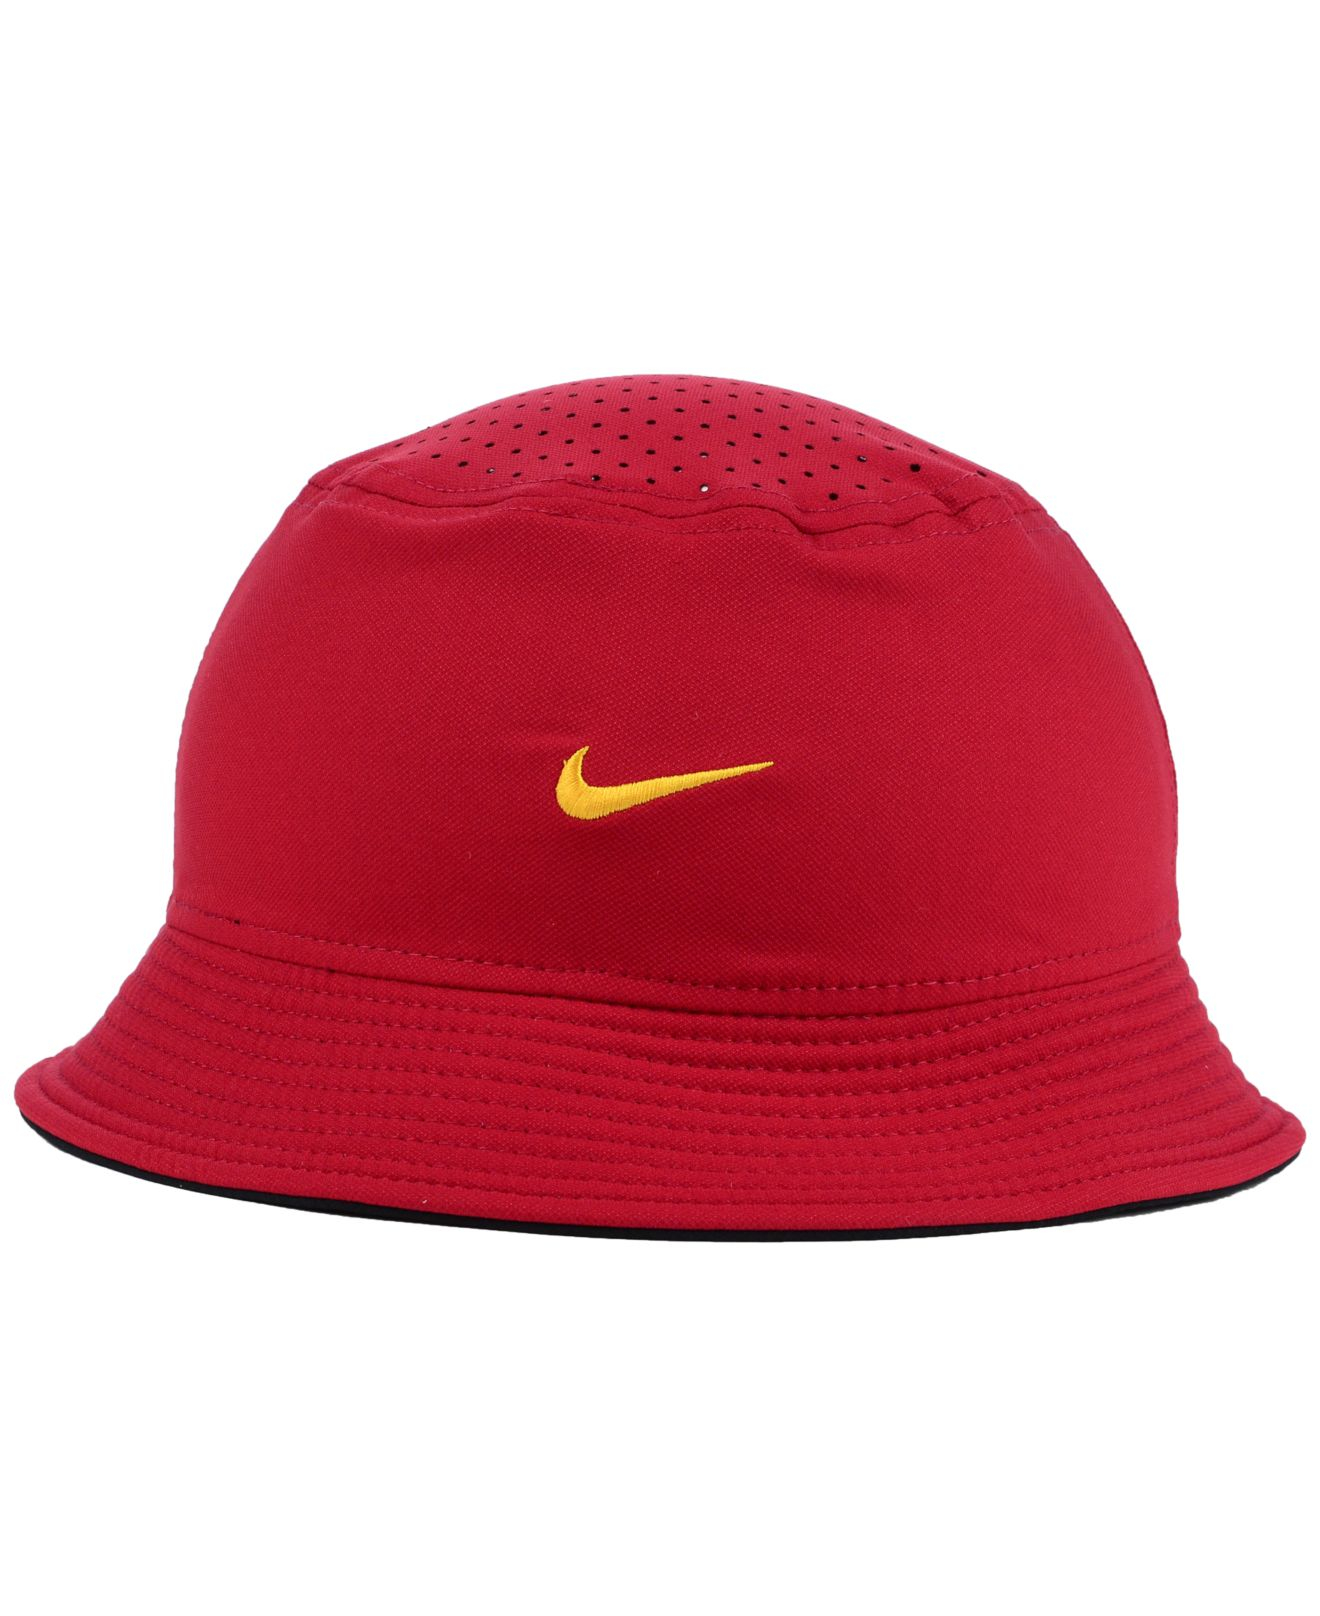 Lyst - Nike Usc Trojans Vapor Bucket Hat in Red for Men